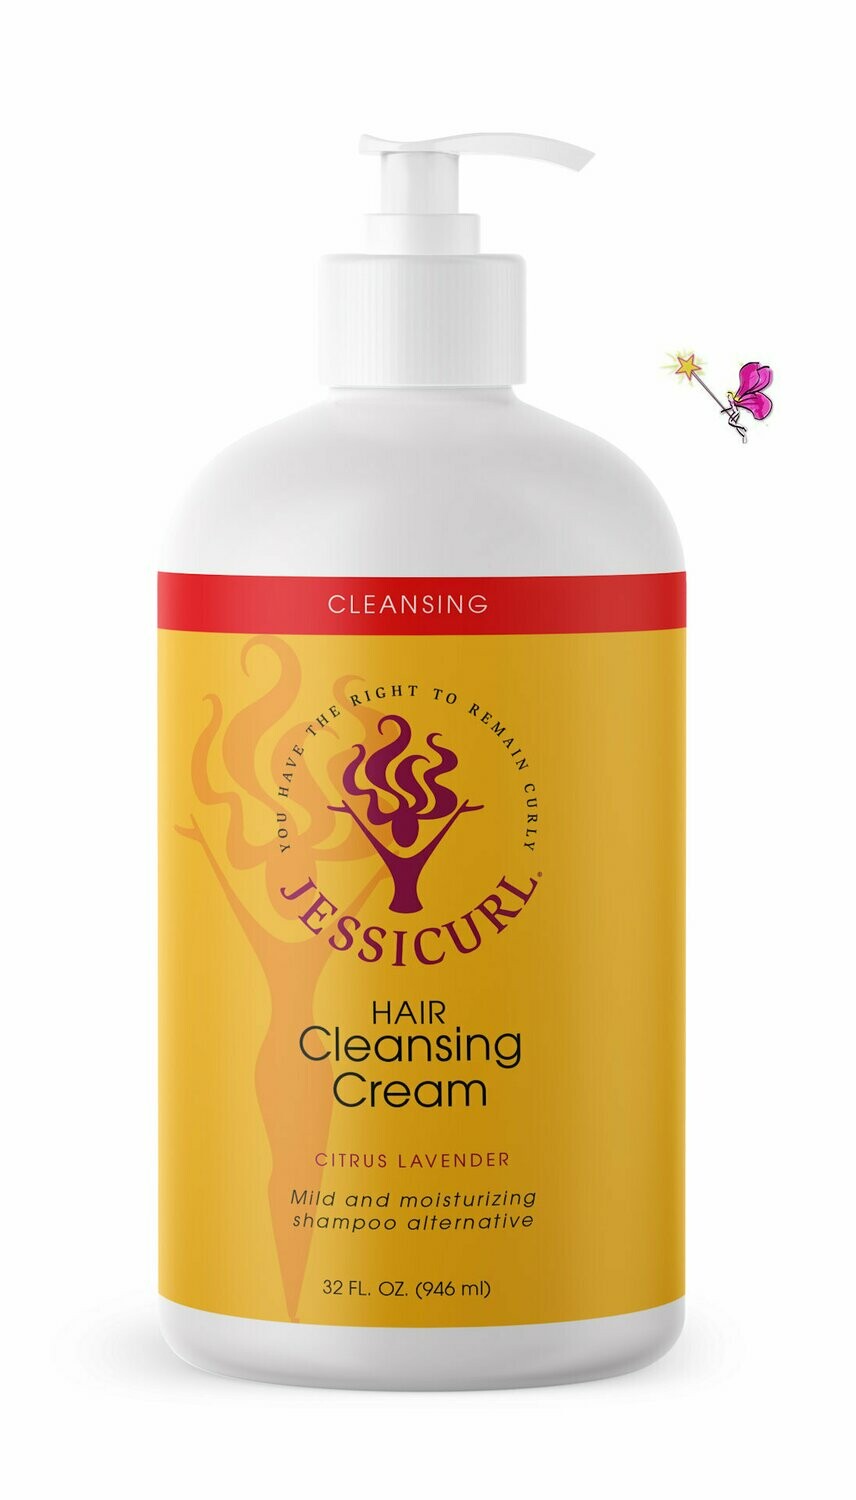 Jessicurl Hair Cleansing Cream Citrus Lavender  946ml (32oz)